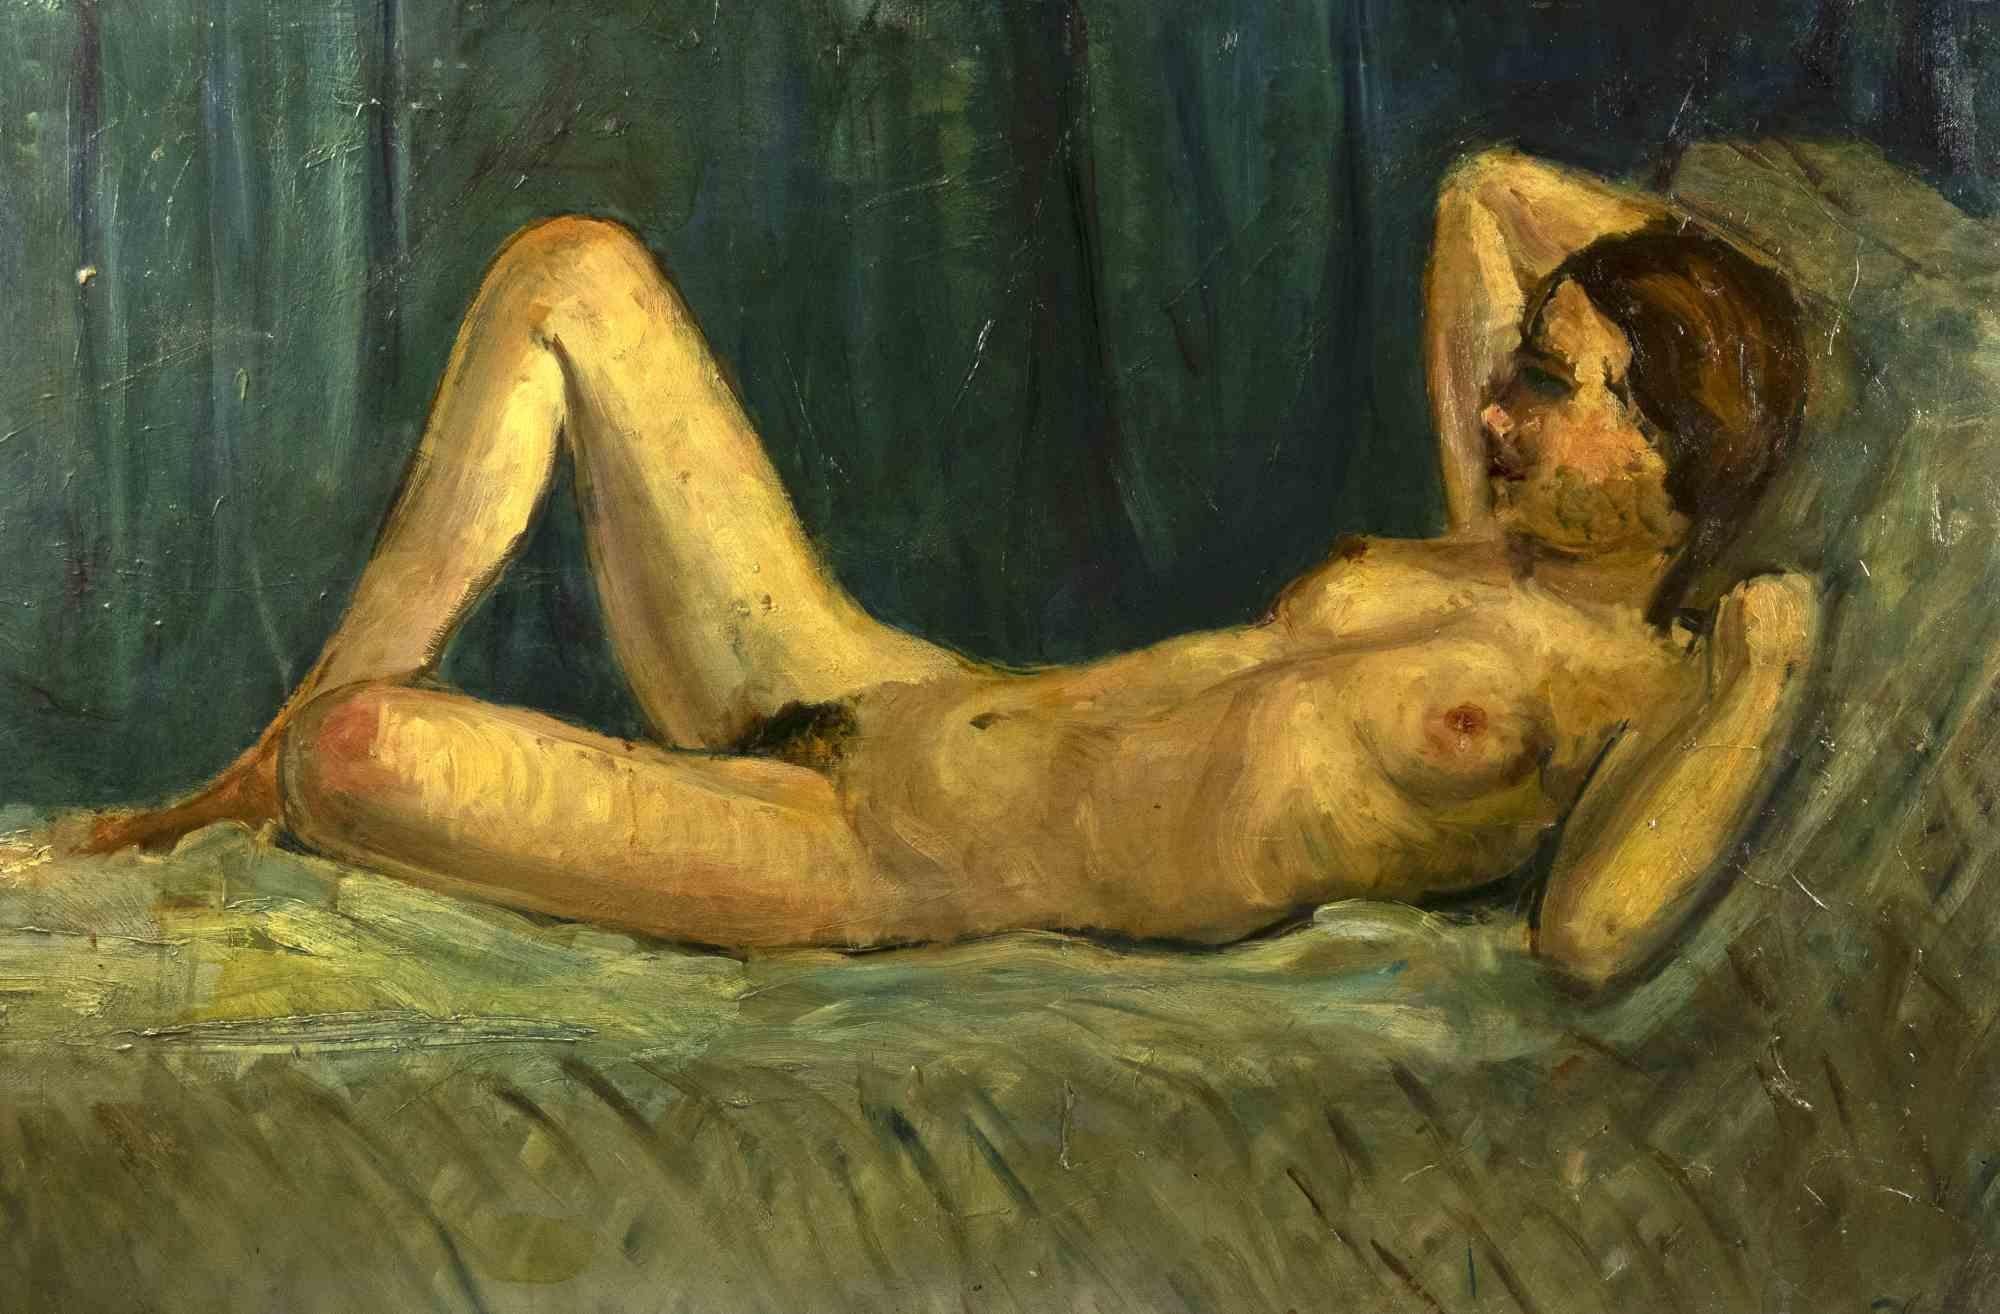 Nude ist ein originelles modernes Kunstwerk von Antonio Feltrinelli aus den 1930er Jahren.

Gemischte farbige Ölgemälde auf Leinwand.

Nicht unterzeichnet.

Antonio Feltrinelli


(Mailand, 1887 - Gargnano, 1942)

 

Antonio Feltrinelli wurde am 1.